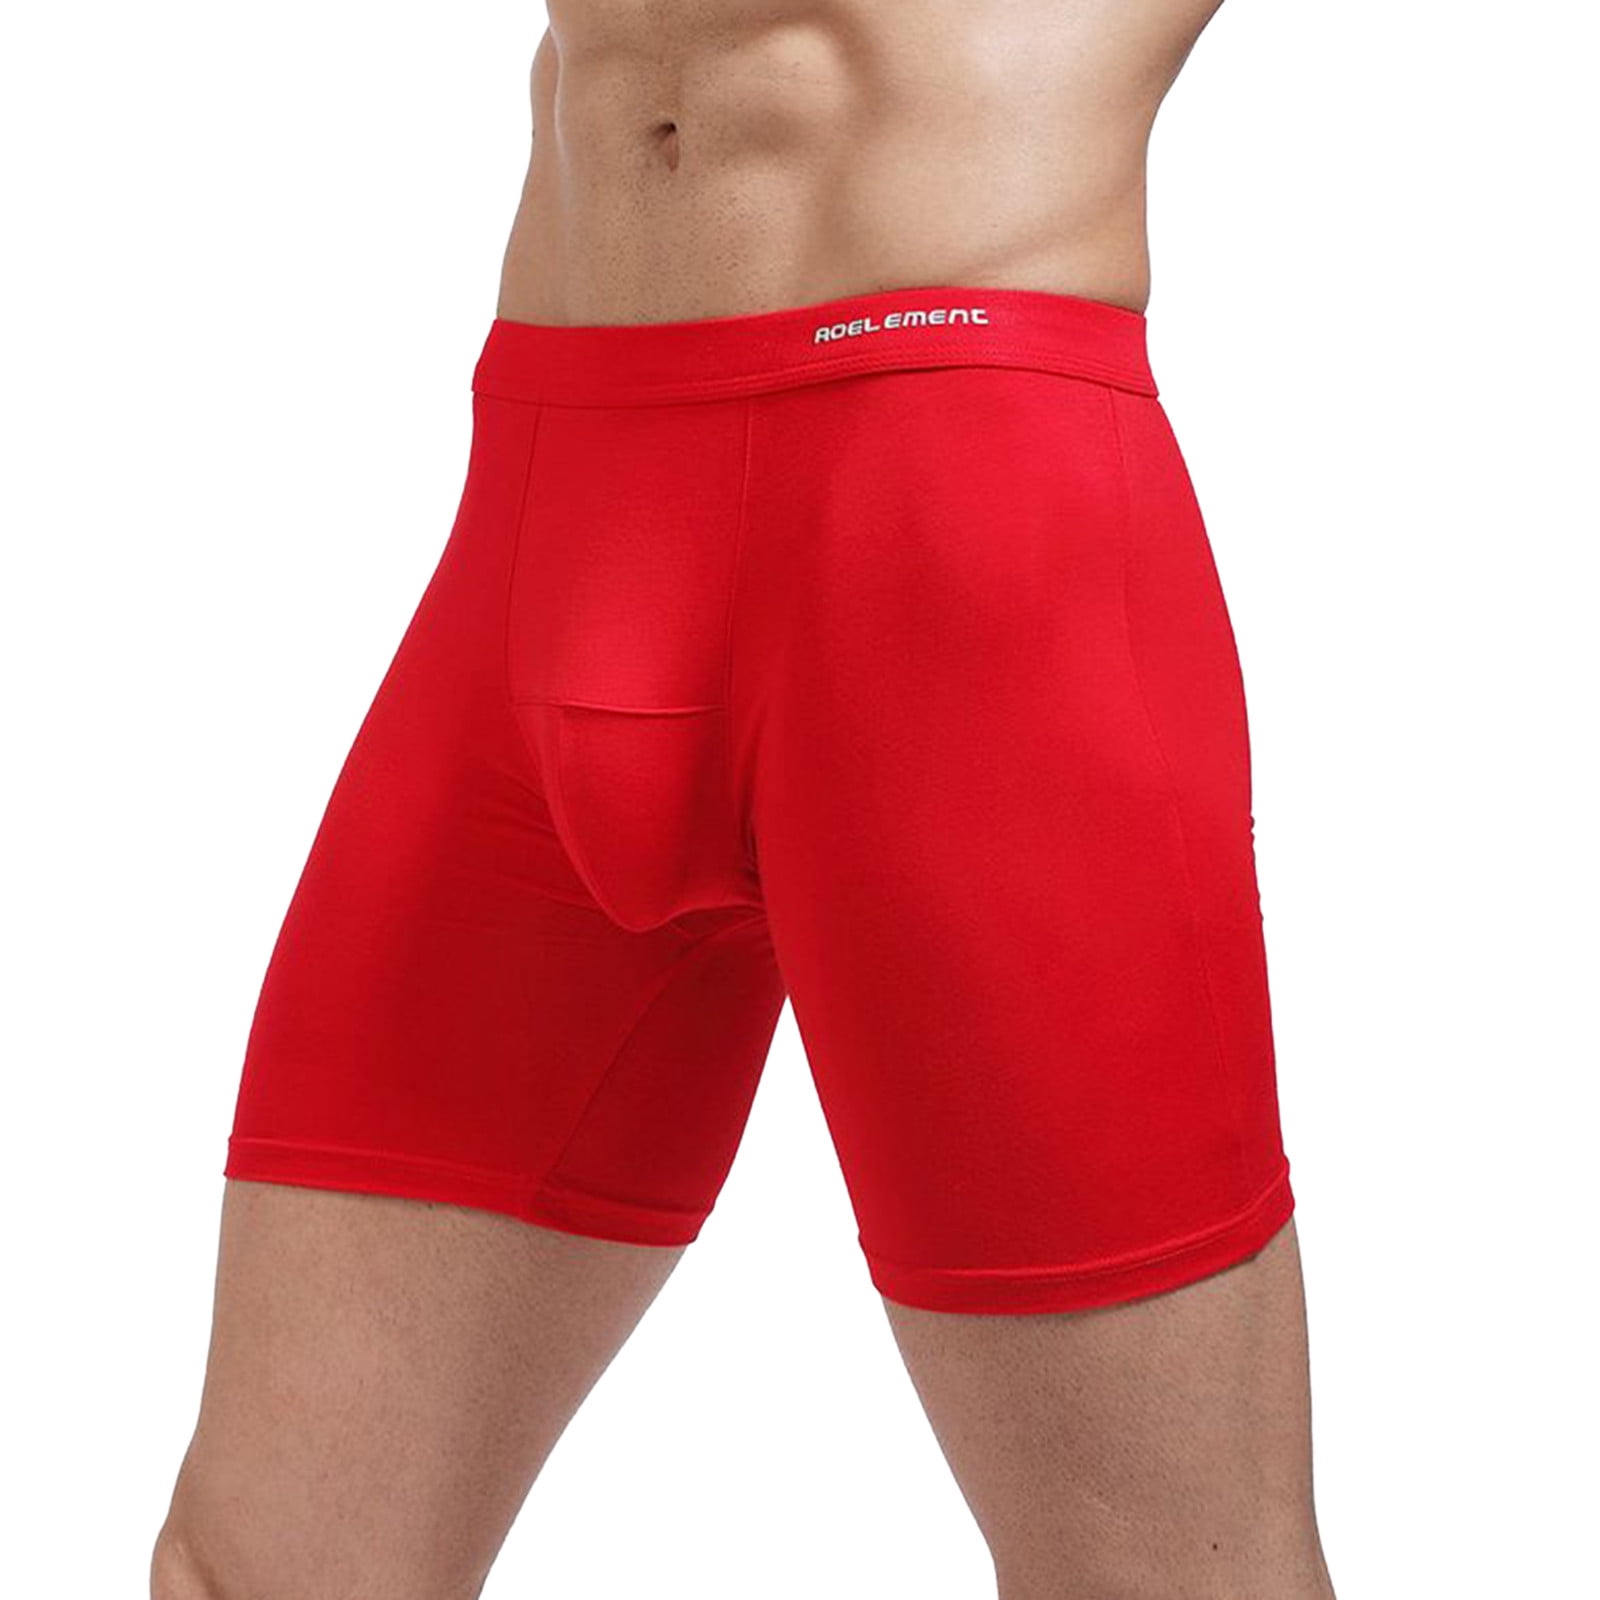 Pimfylm Cotton Underwear For Men High Waist Men's Micro Speed Dri No Show  Brief Red X-Large